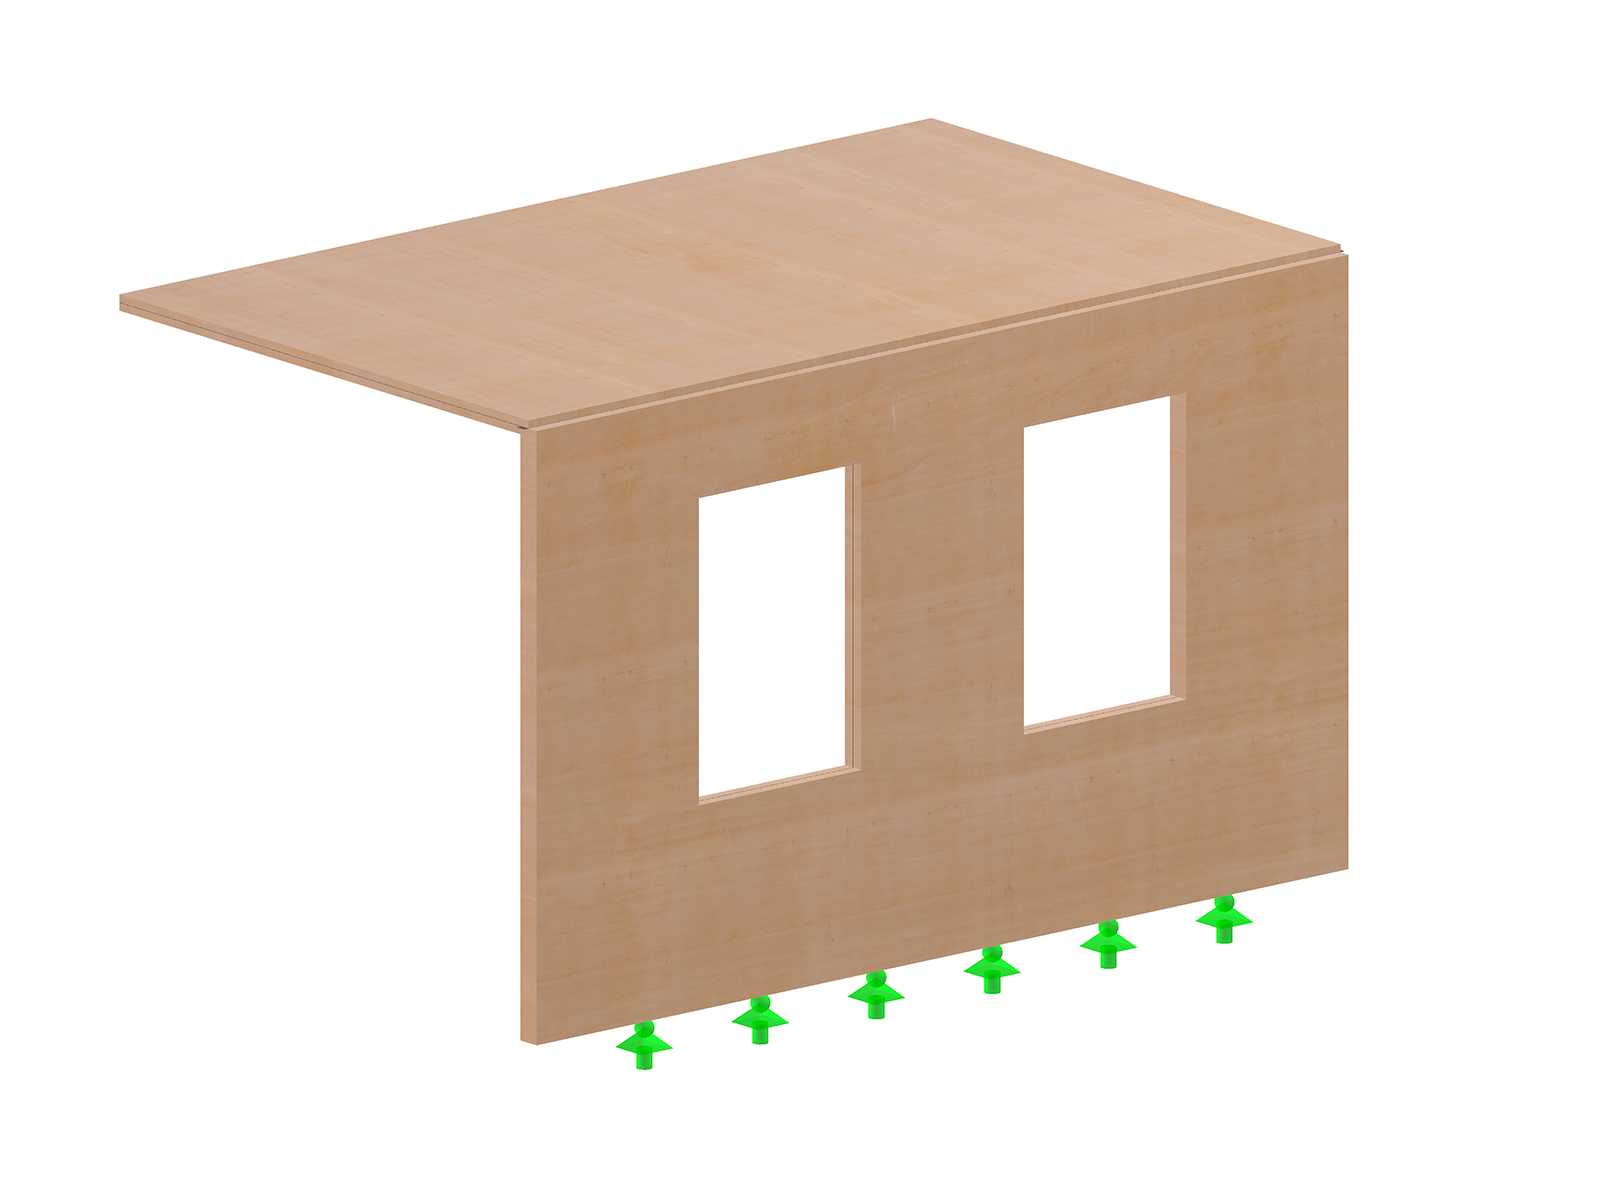 Modelo 005014 | Extensión hecha de componentes planos de madera